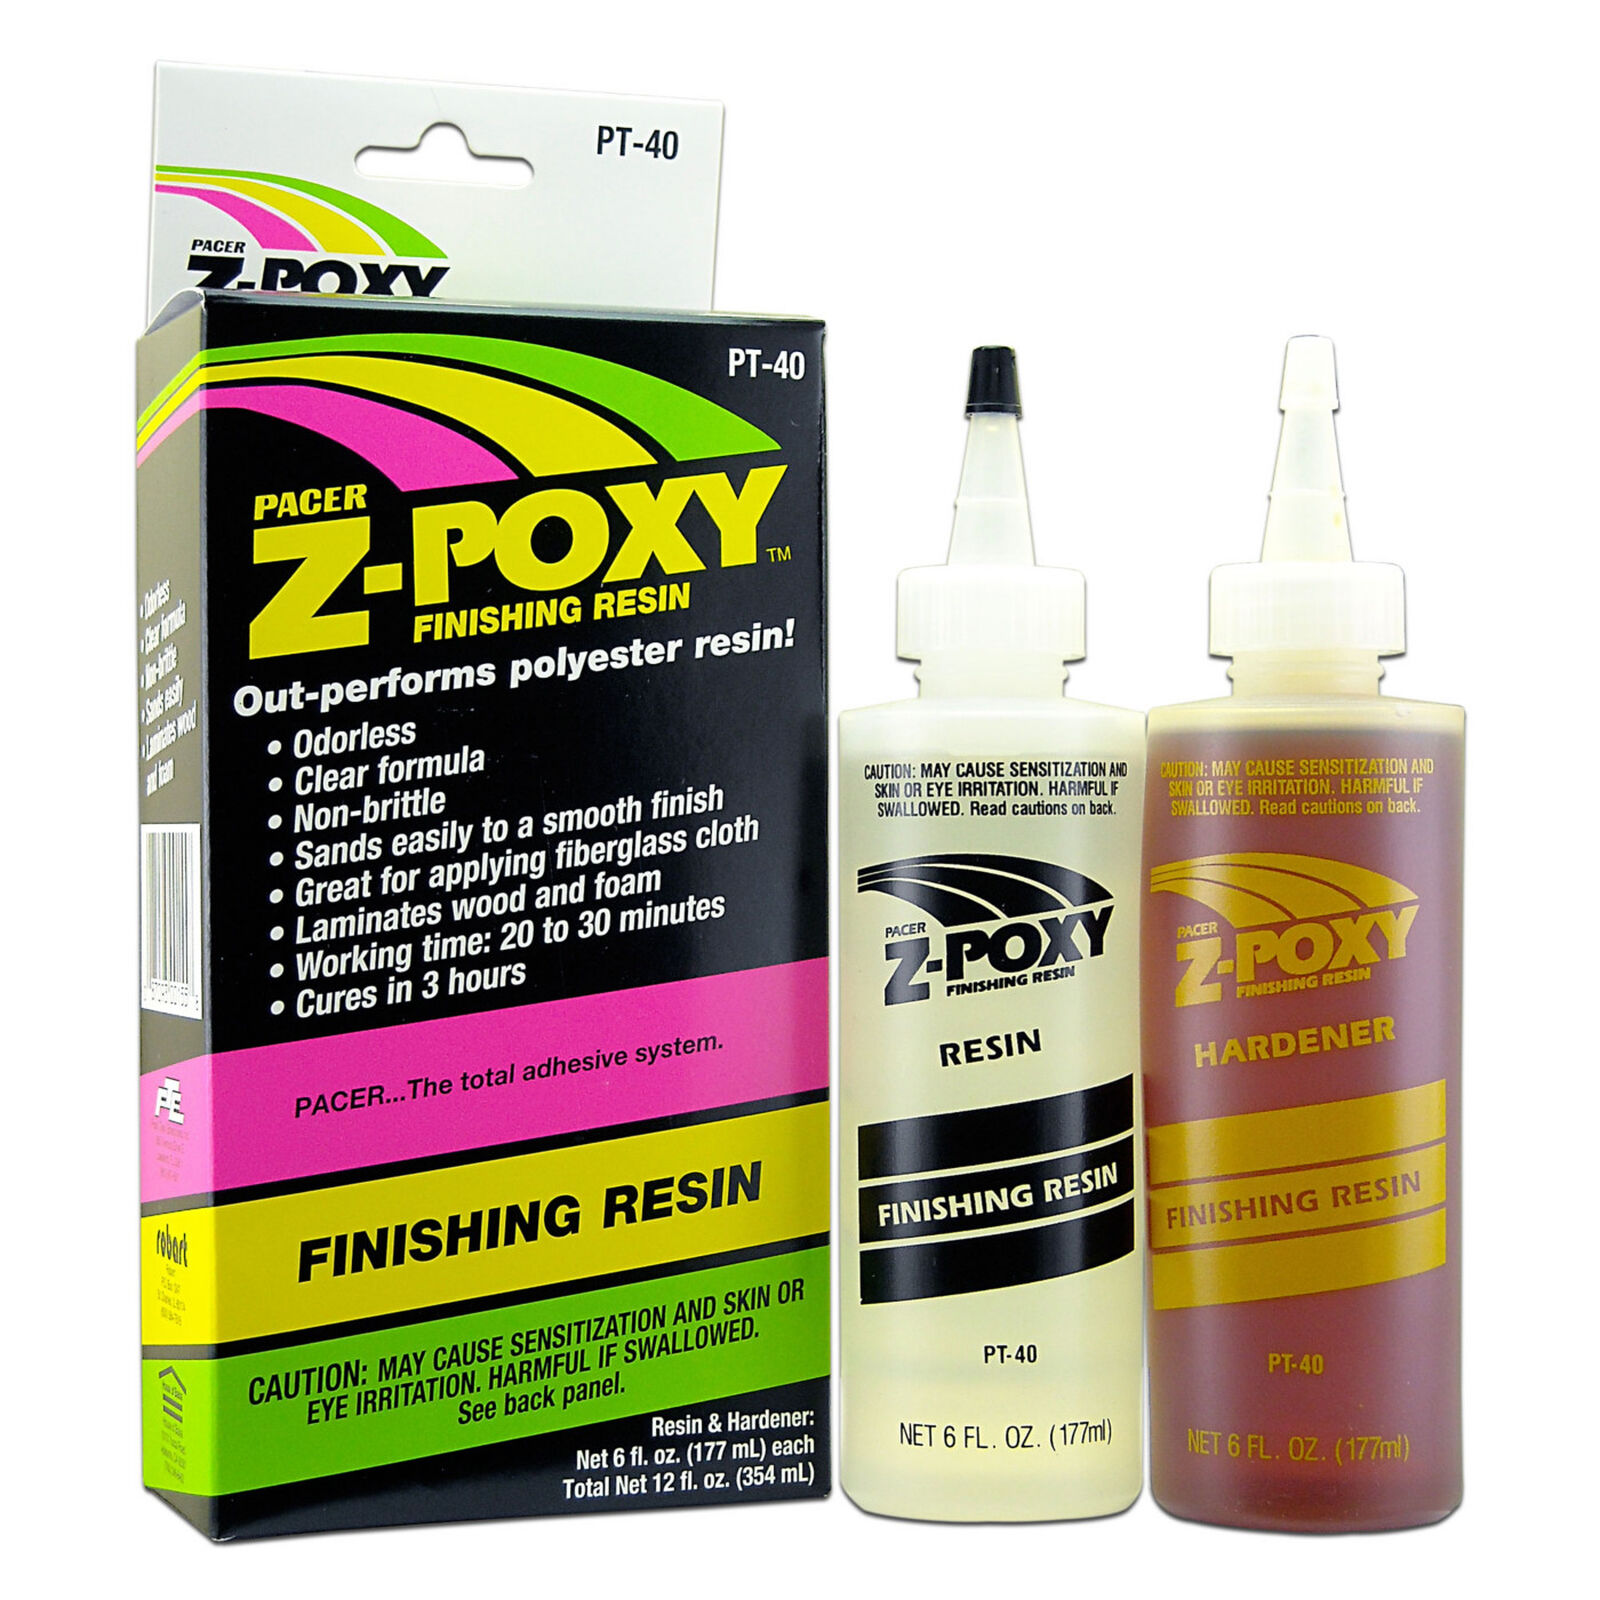 EPE EasyPour Epoxy 2 Gallon Kit - easypourepoxy